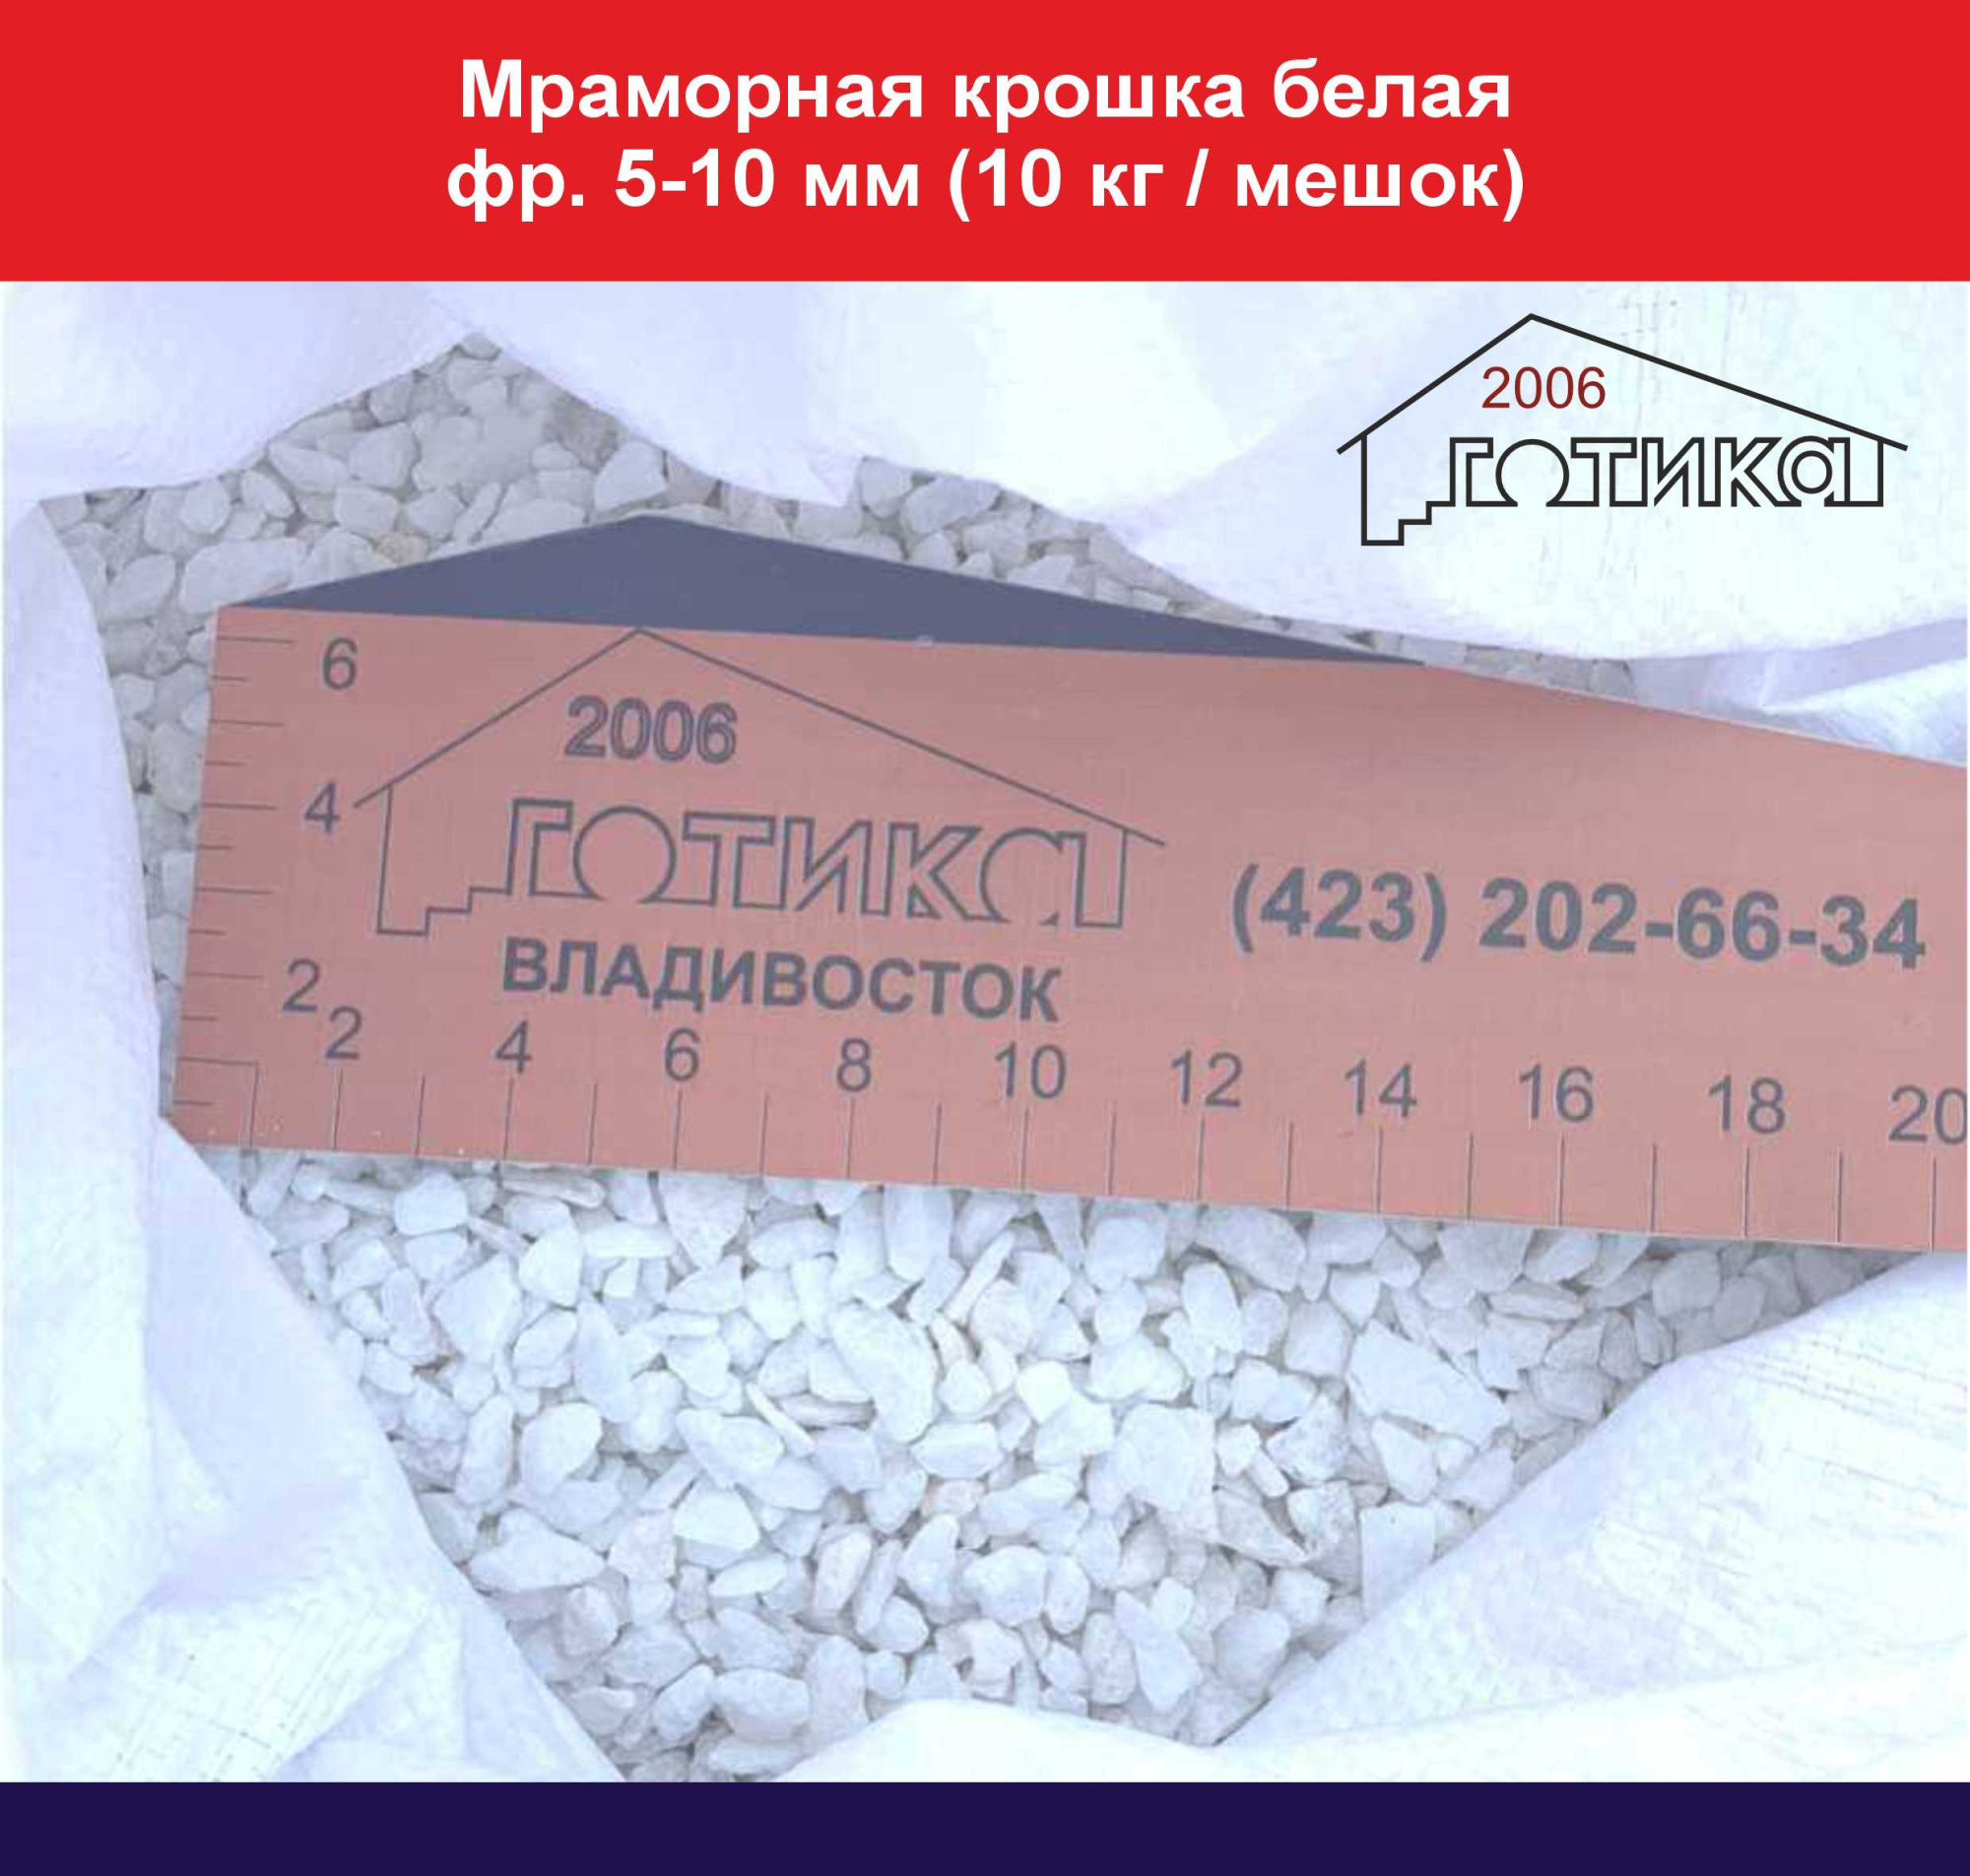 Мраморная крошка белая фр. 5-10 мм (10 кг мешок)